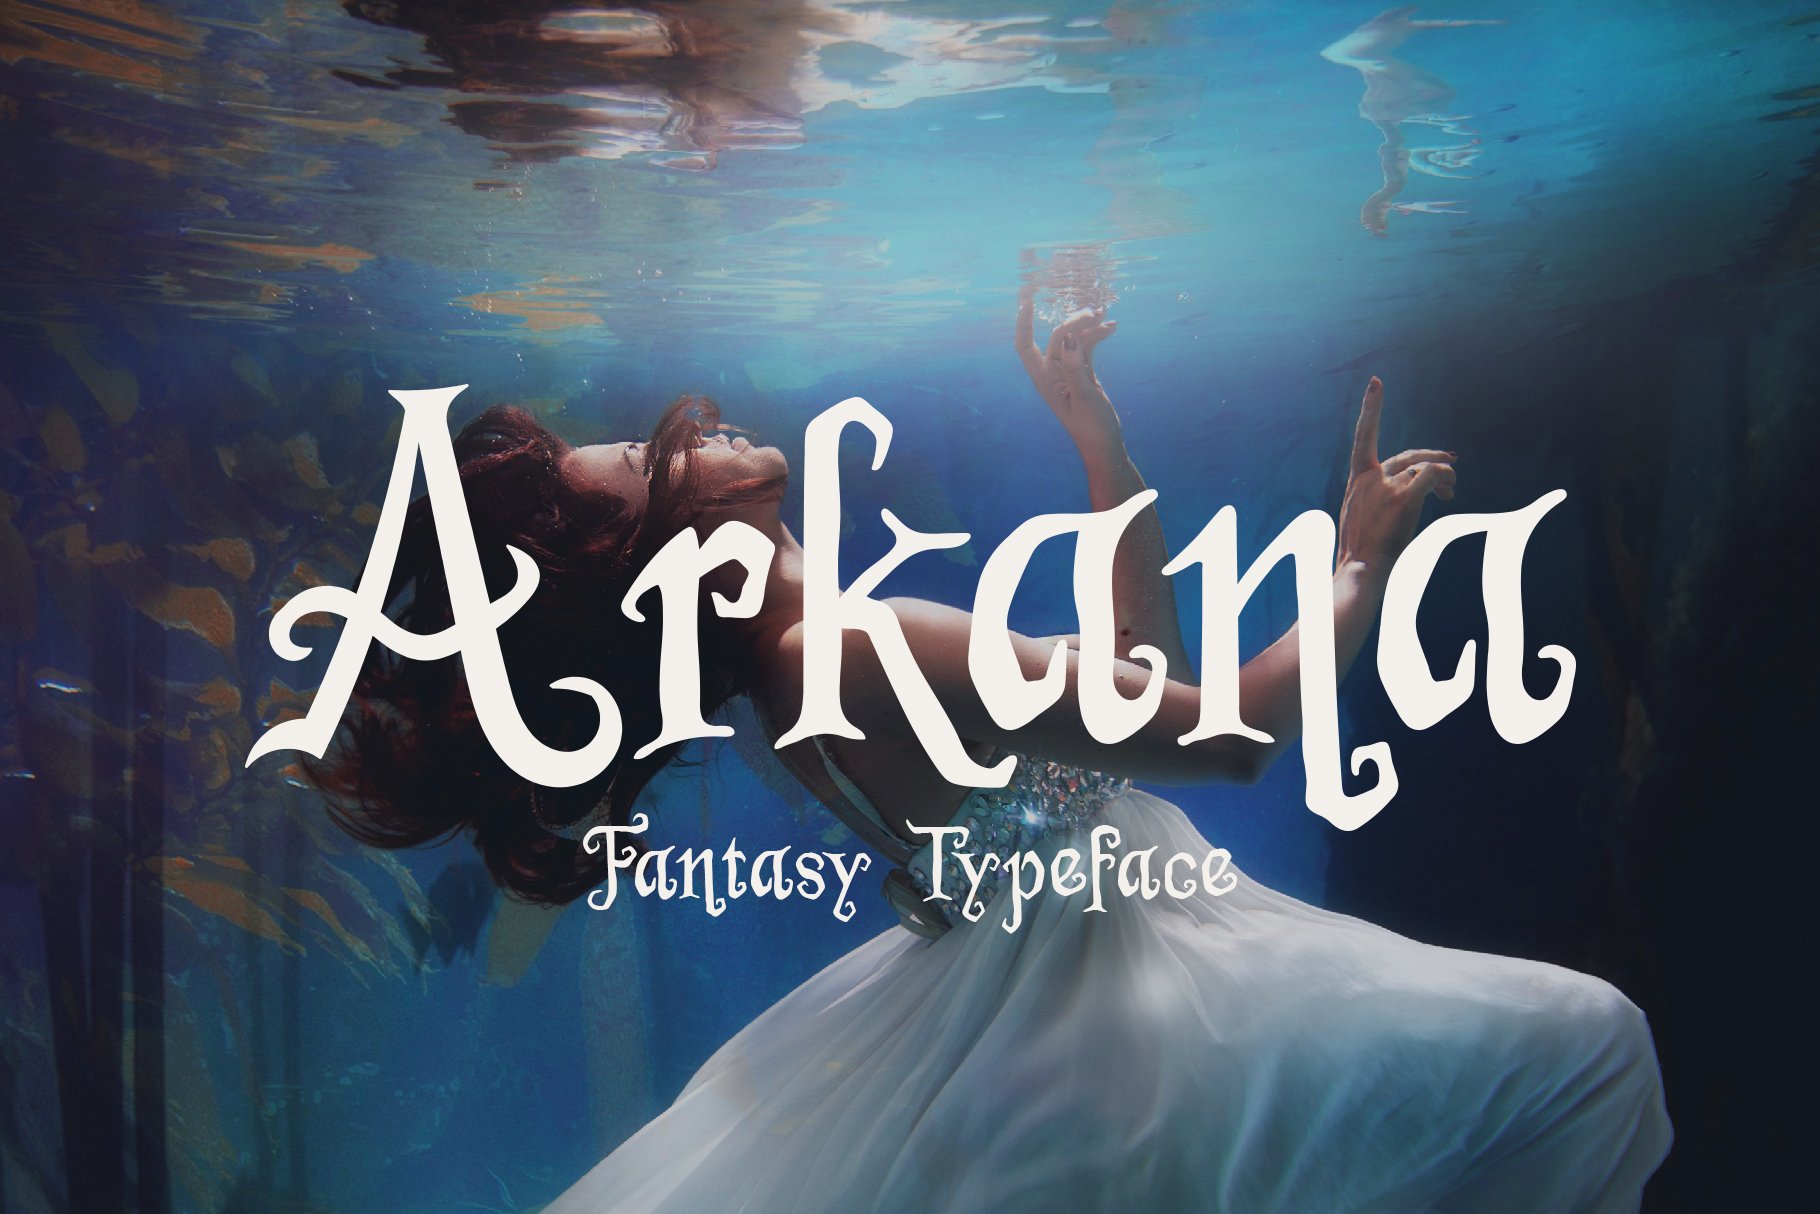 Arkana - Fantasy Typeface cover image.